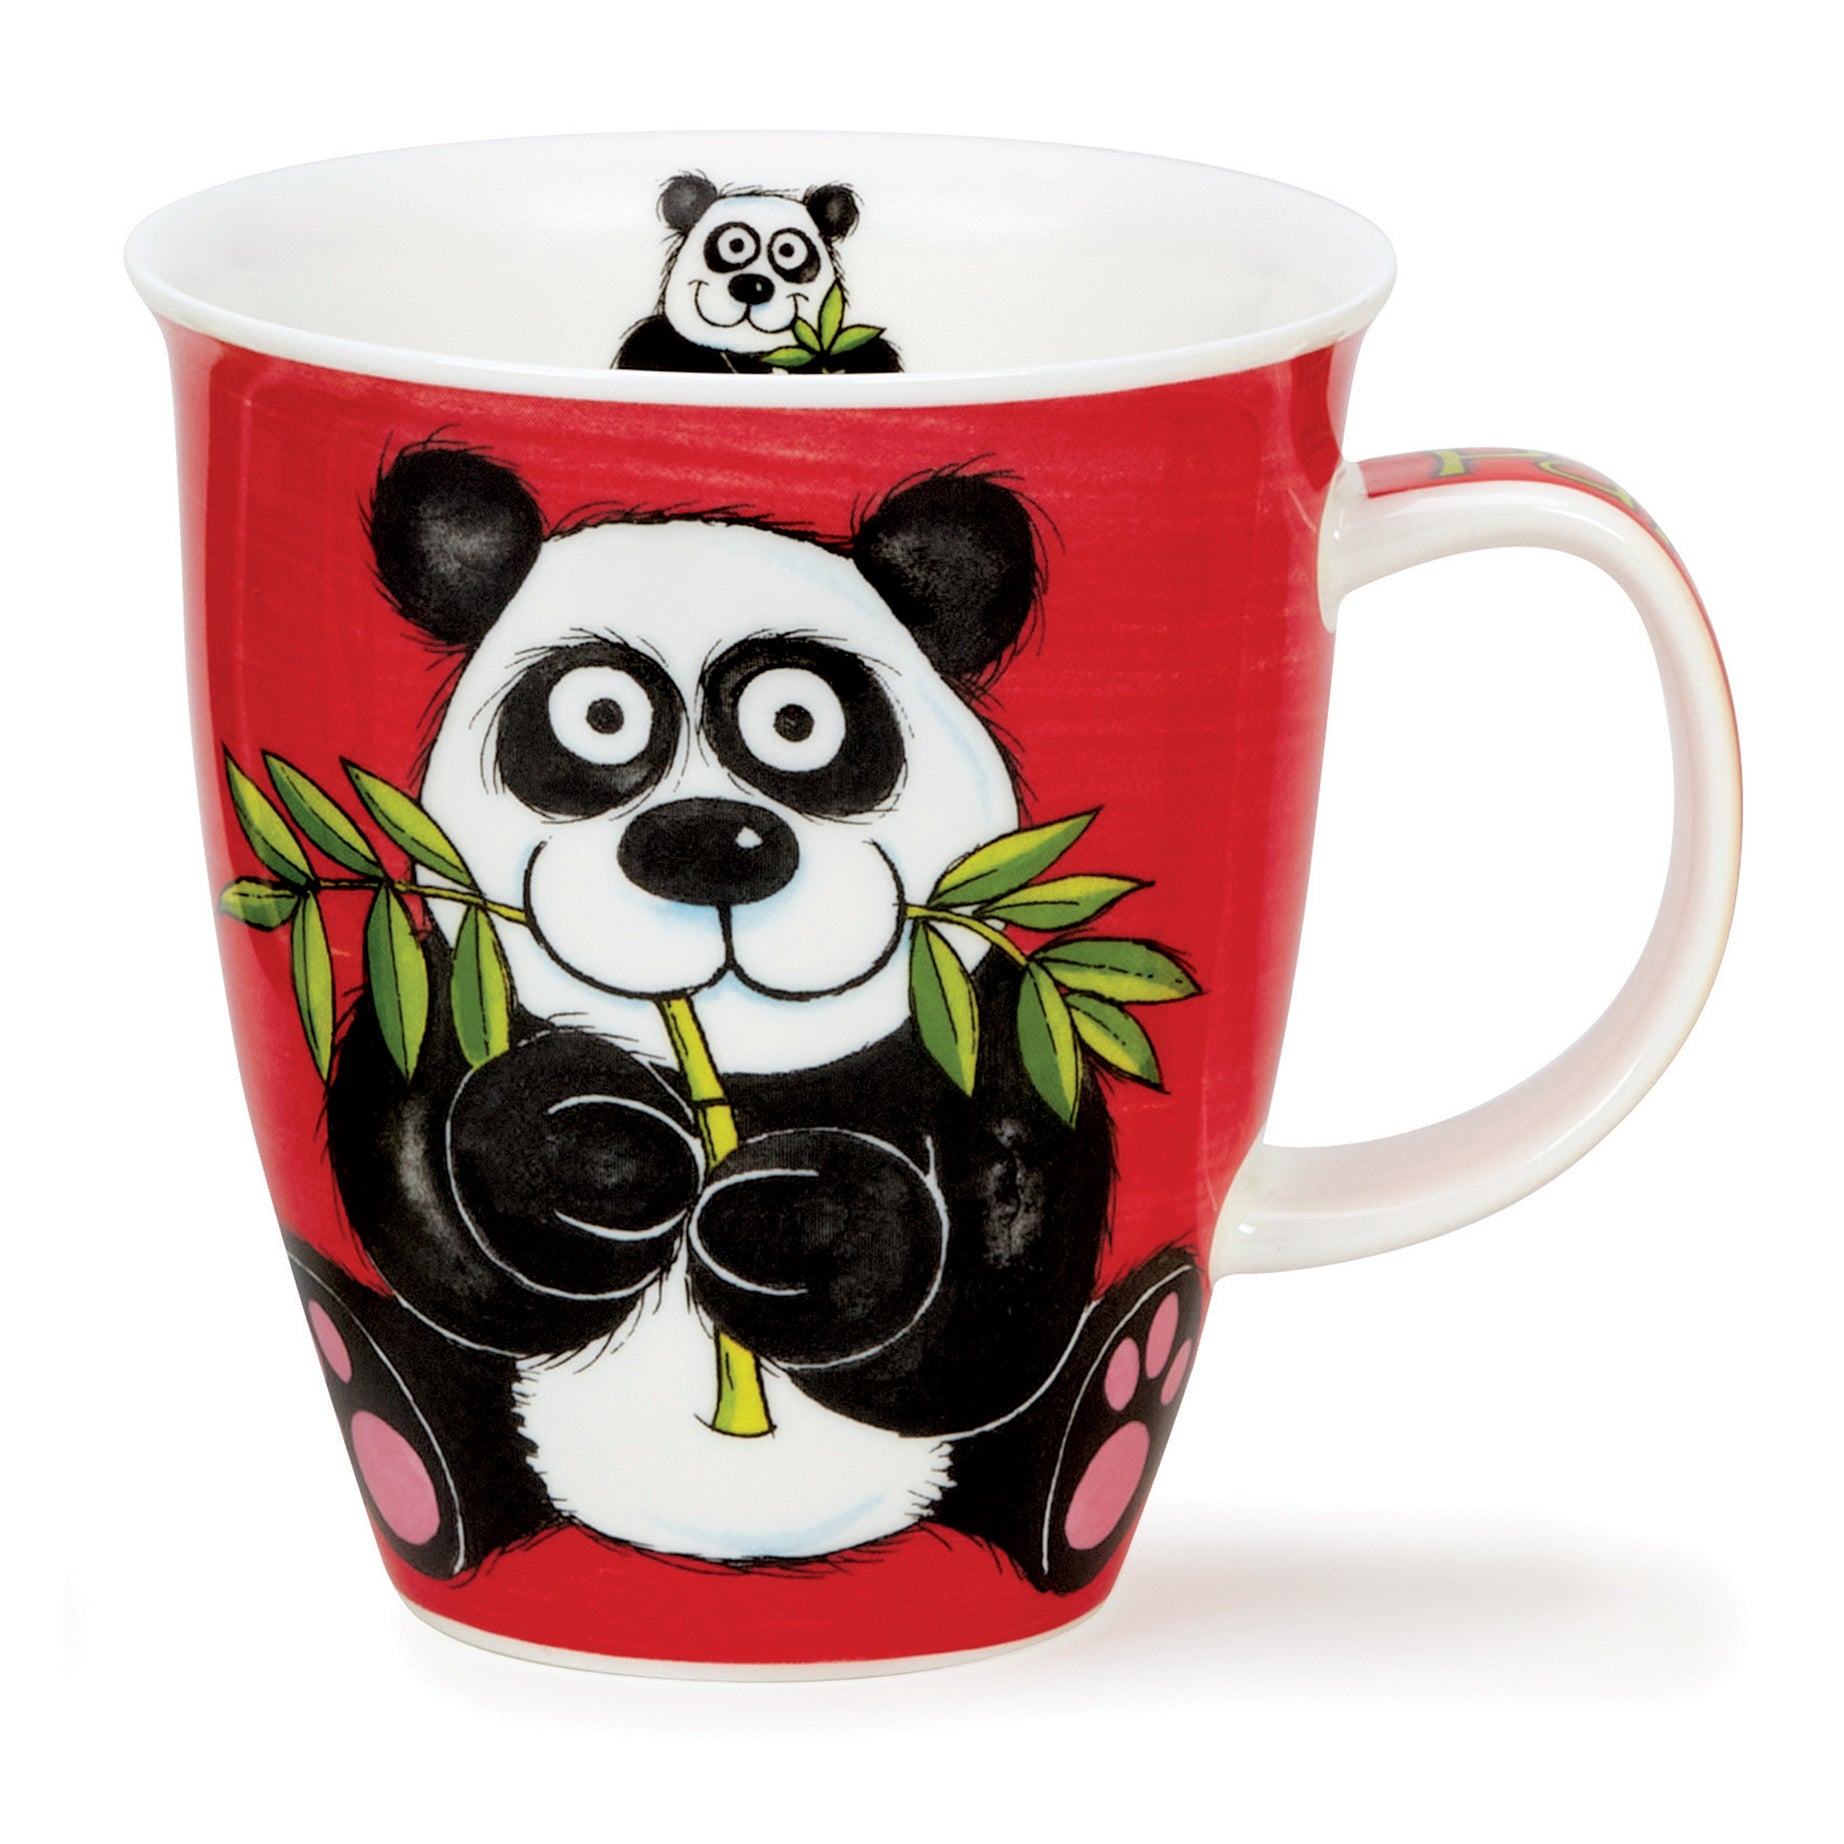 Dunoon Becher Teetasse Kaffeetasse Nevis Munch Bunch Panda